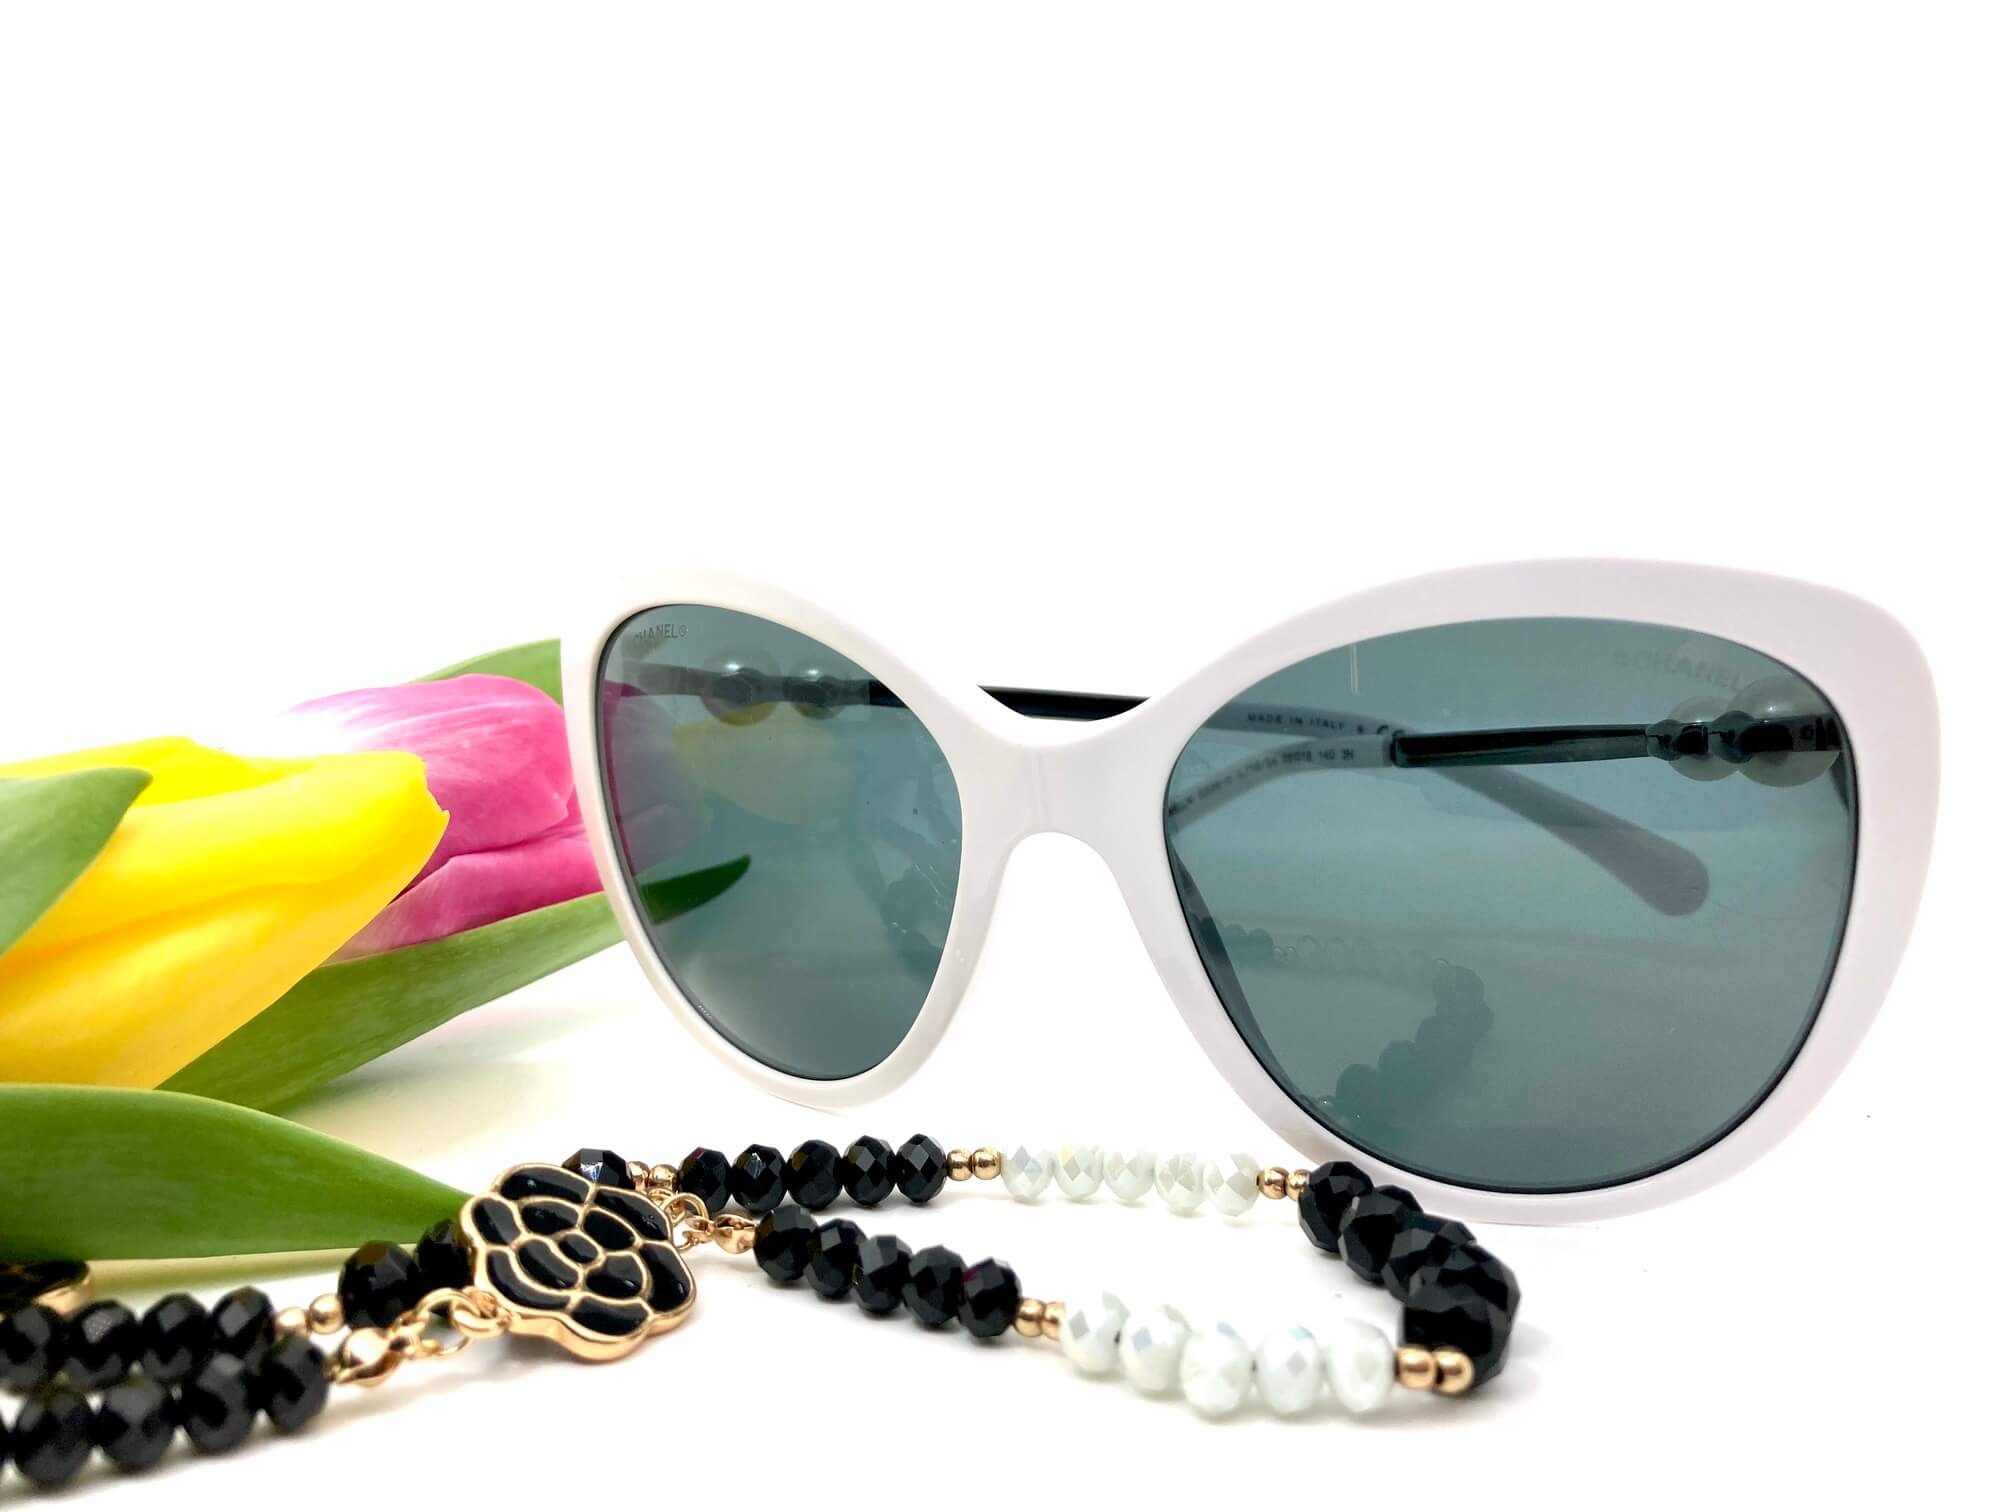 occhiale da sole Chanel bianco asta perla e catena versione fiori idea regalo festa della donna